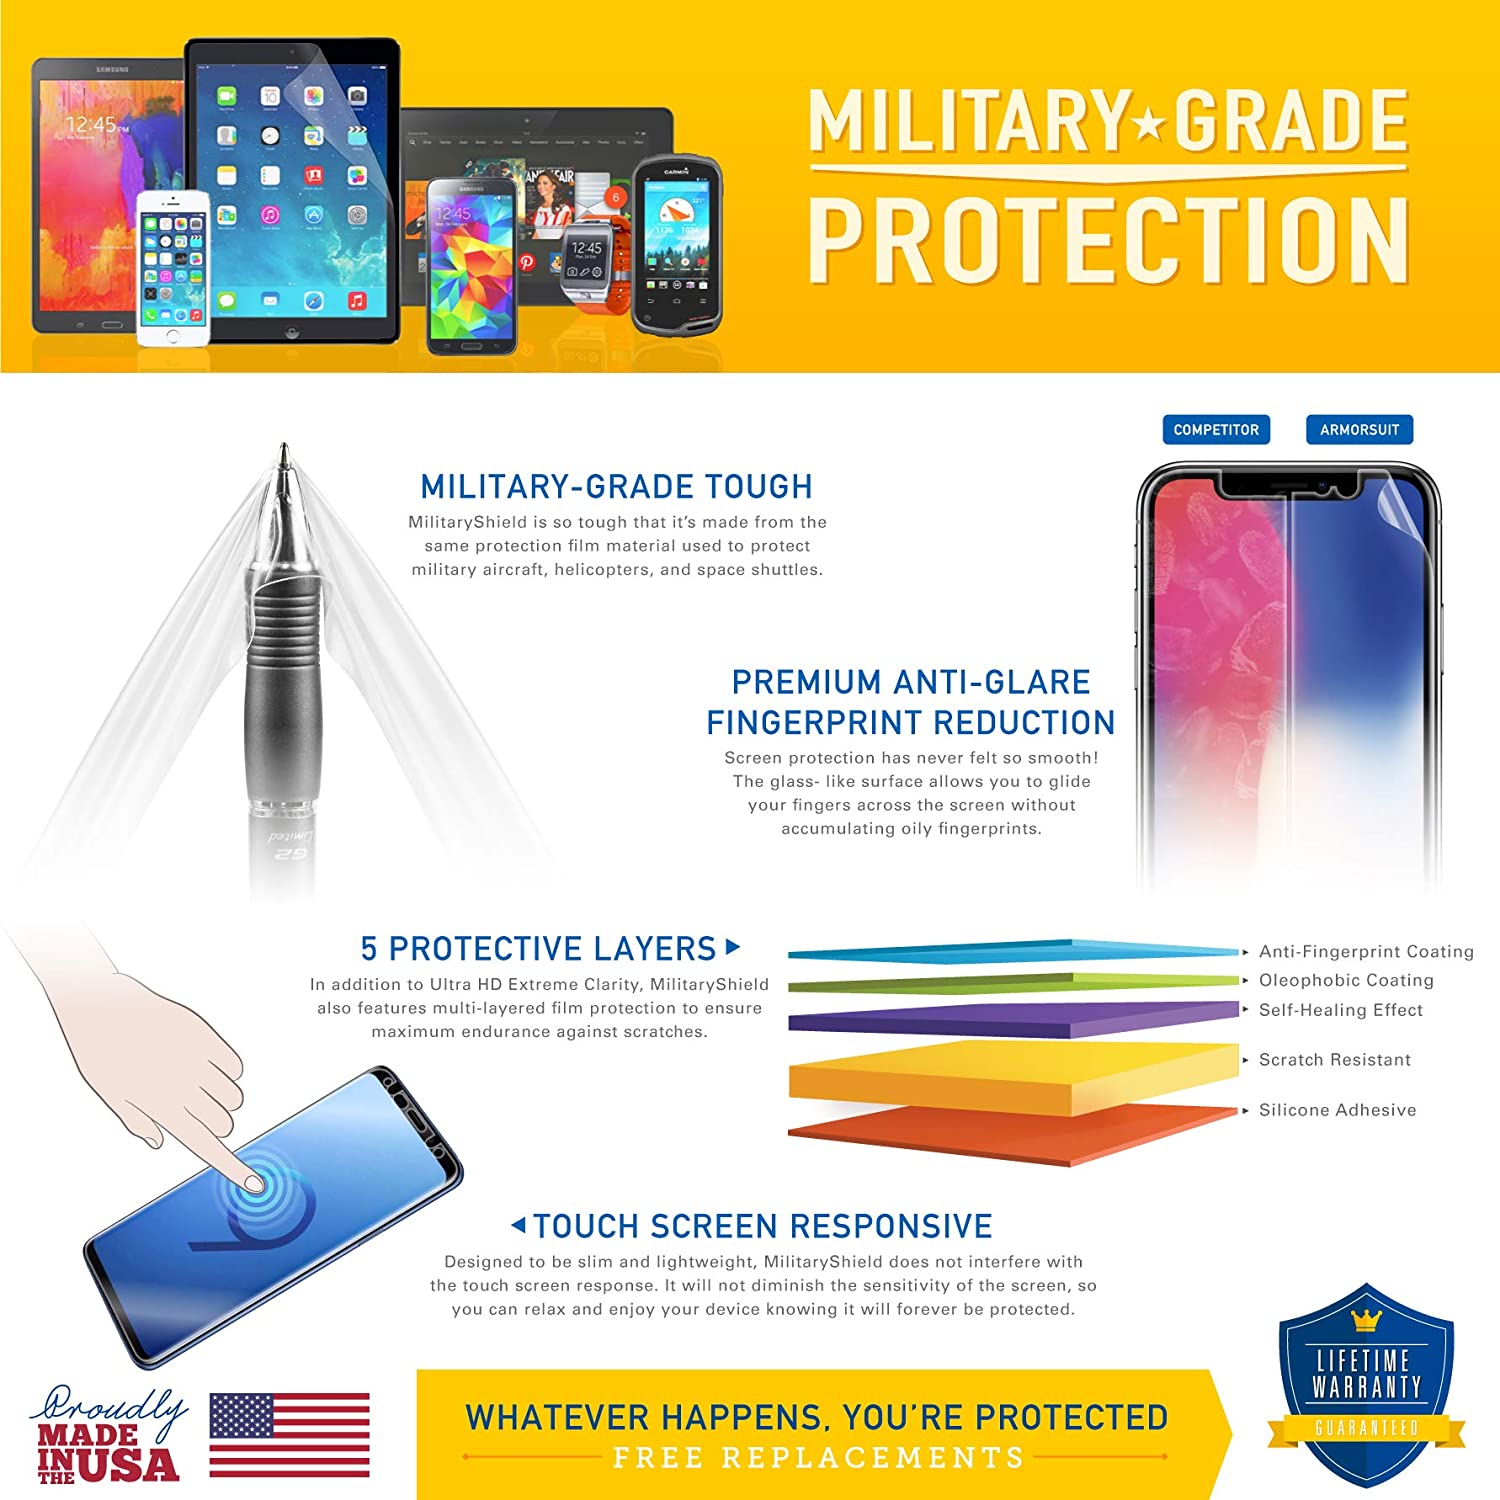 Samsung Galaxy Tab 3 Lite 7" Full Body Skin Protector